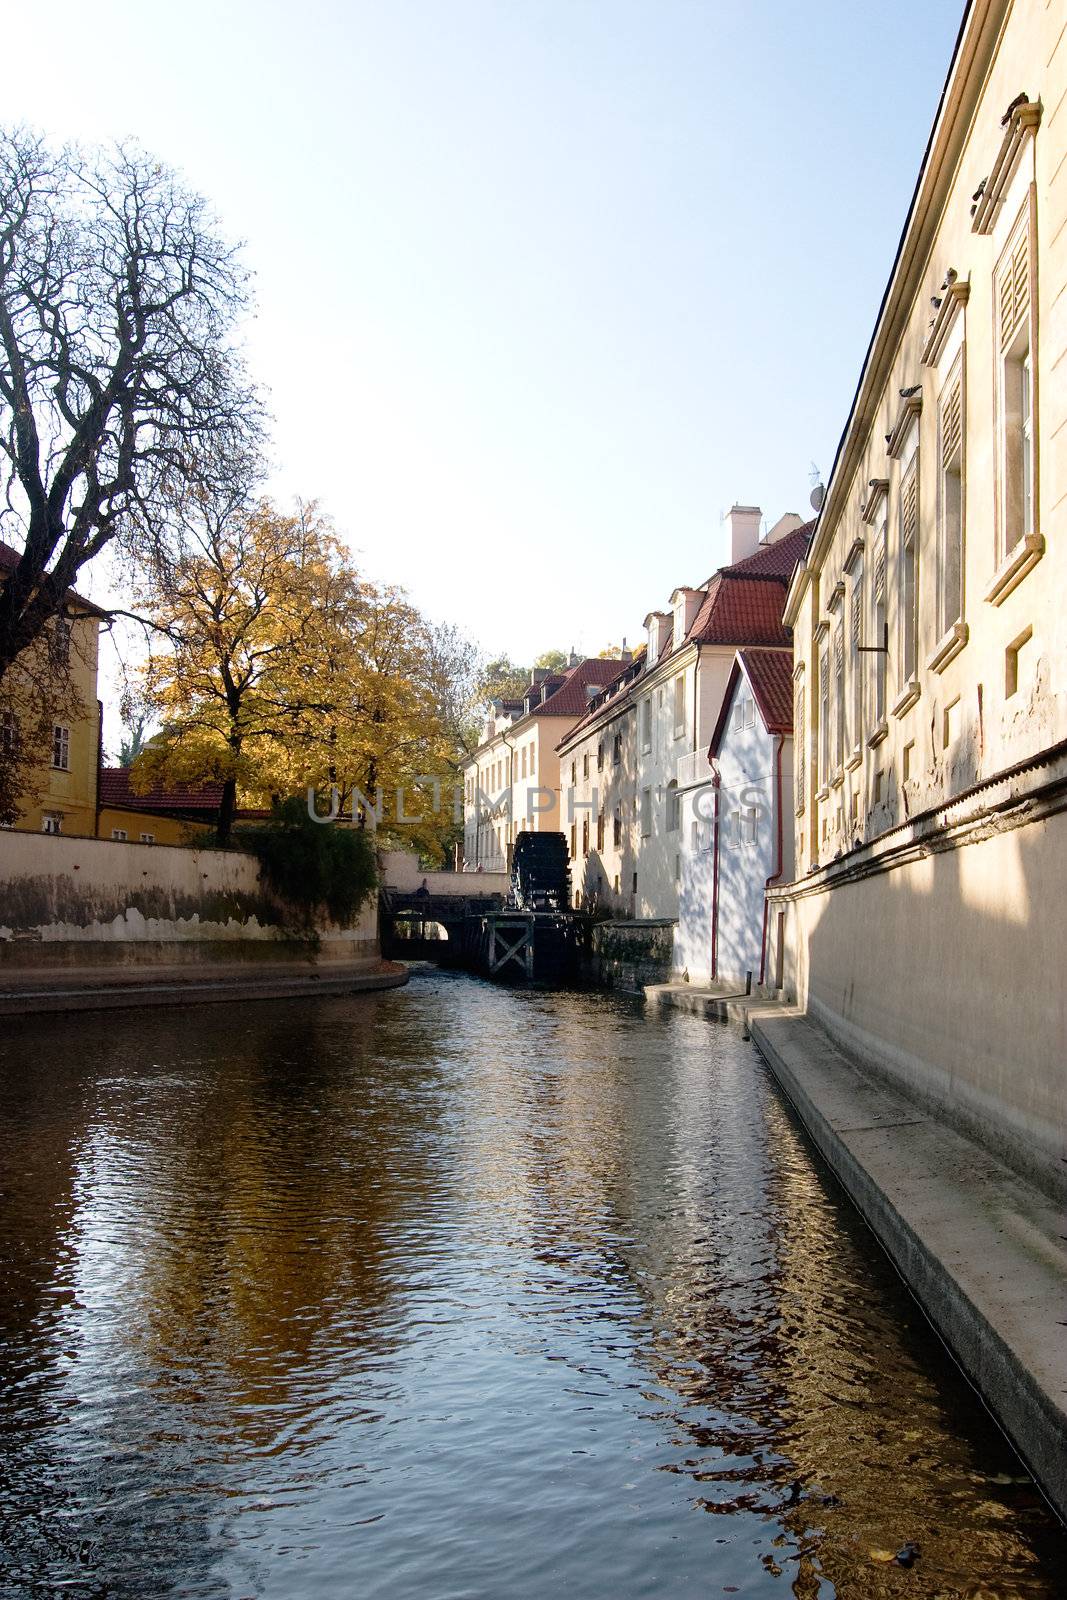 A small river flowing through Prague, Czech Republic